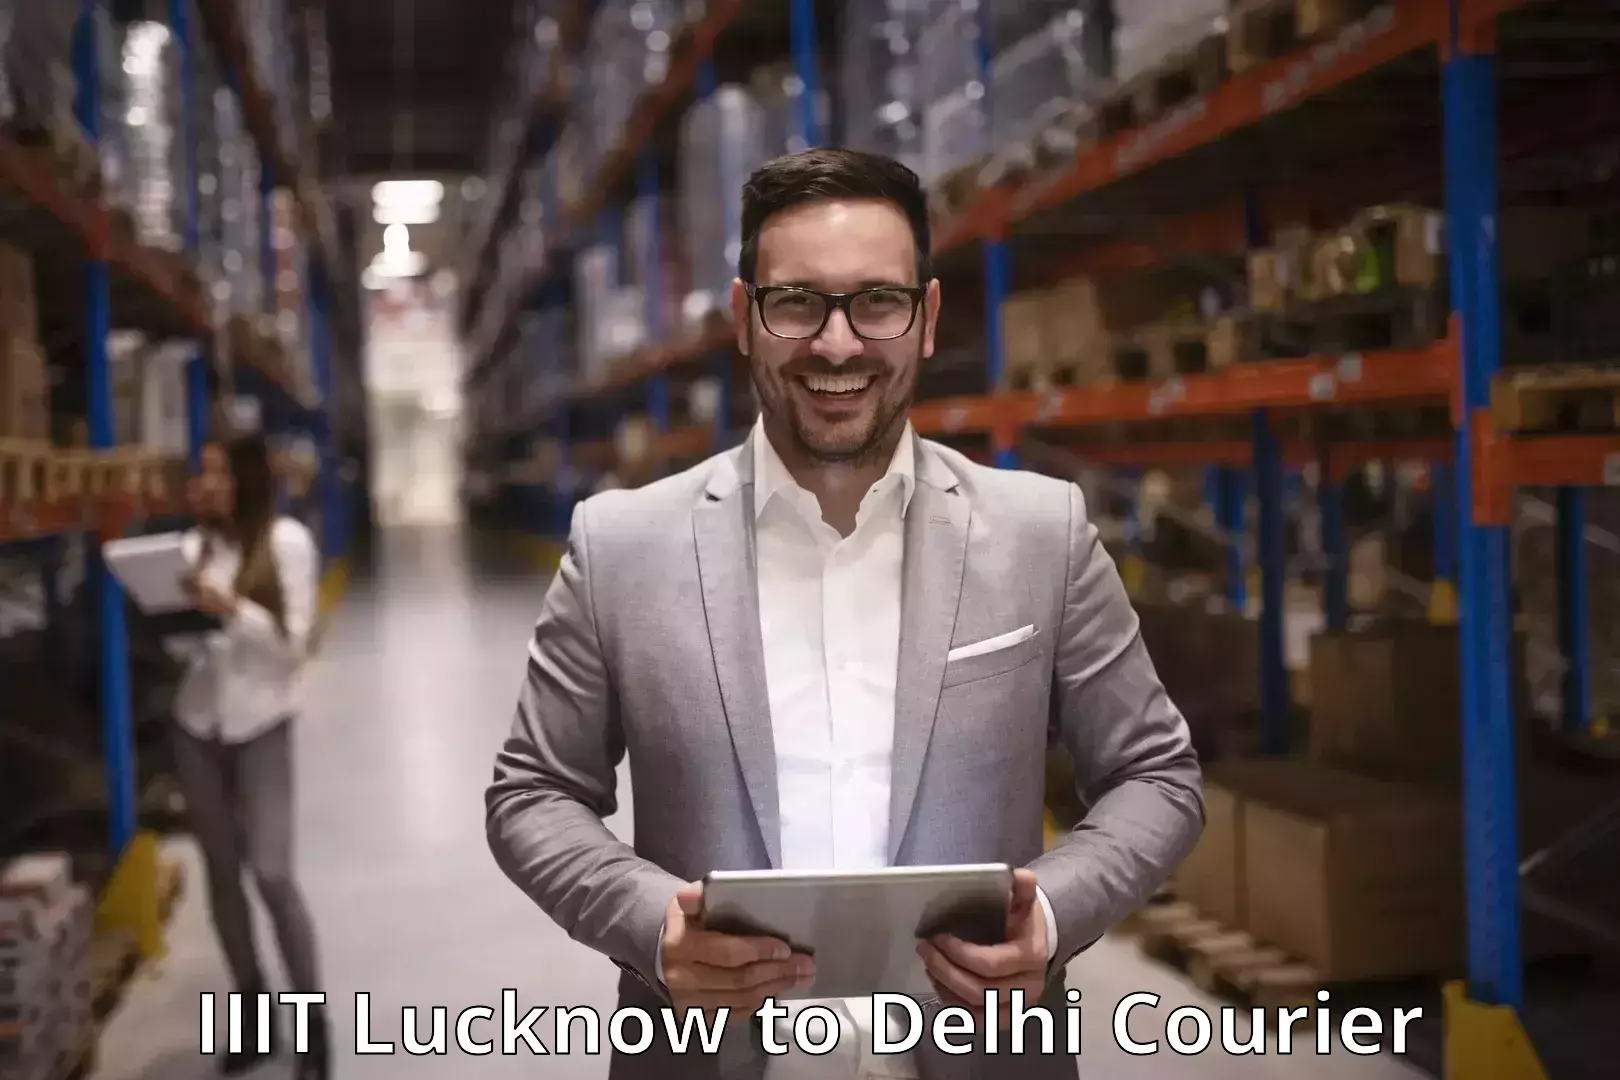 Courier service comparison IIIT Lucknow to Guru Gobind Singh Indraprastha University New Delhi